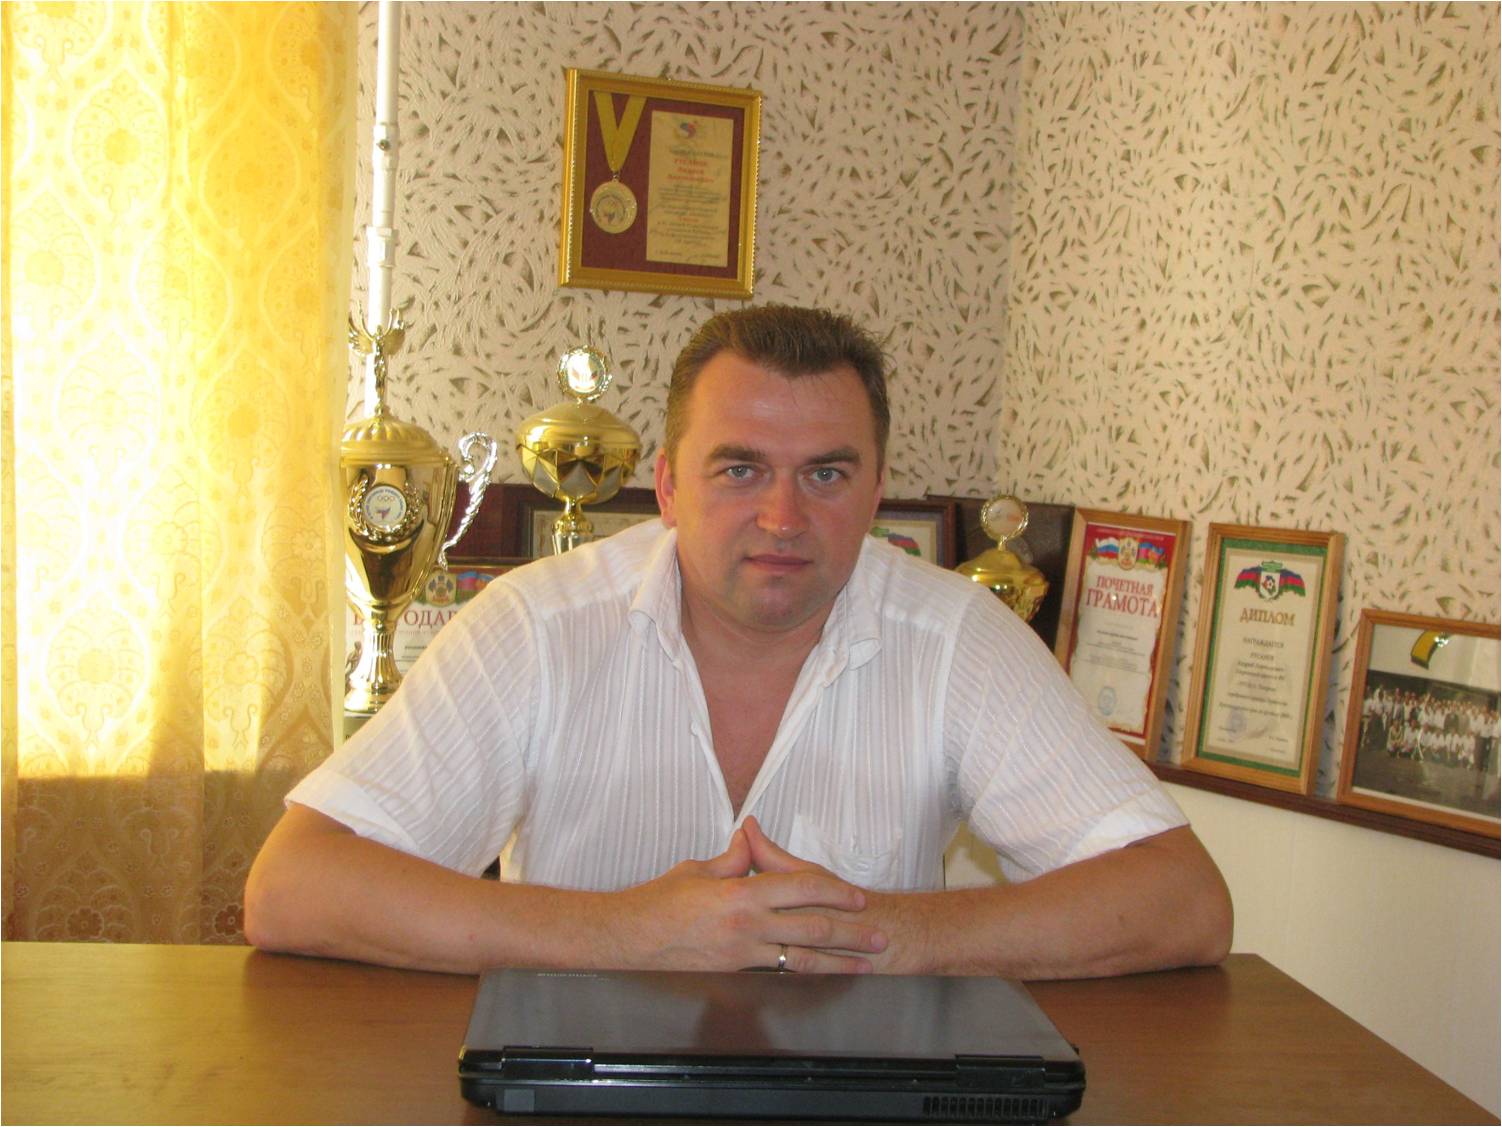 Русанов Андрей Анатольевич